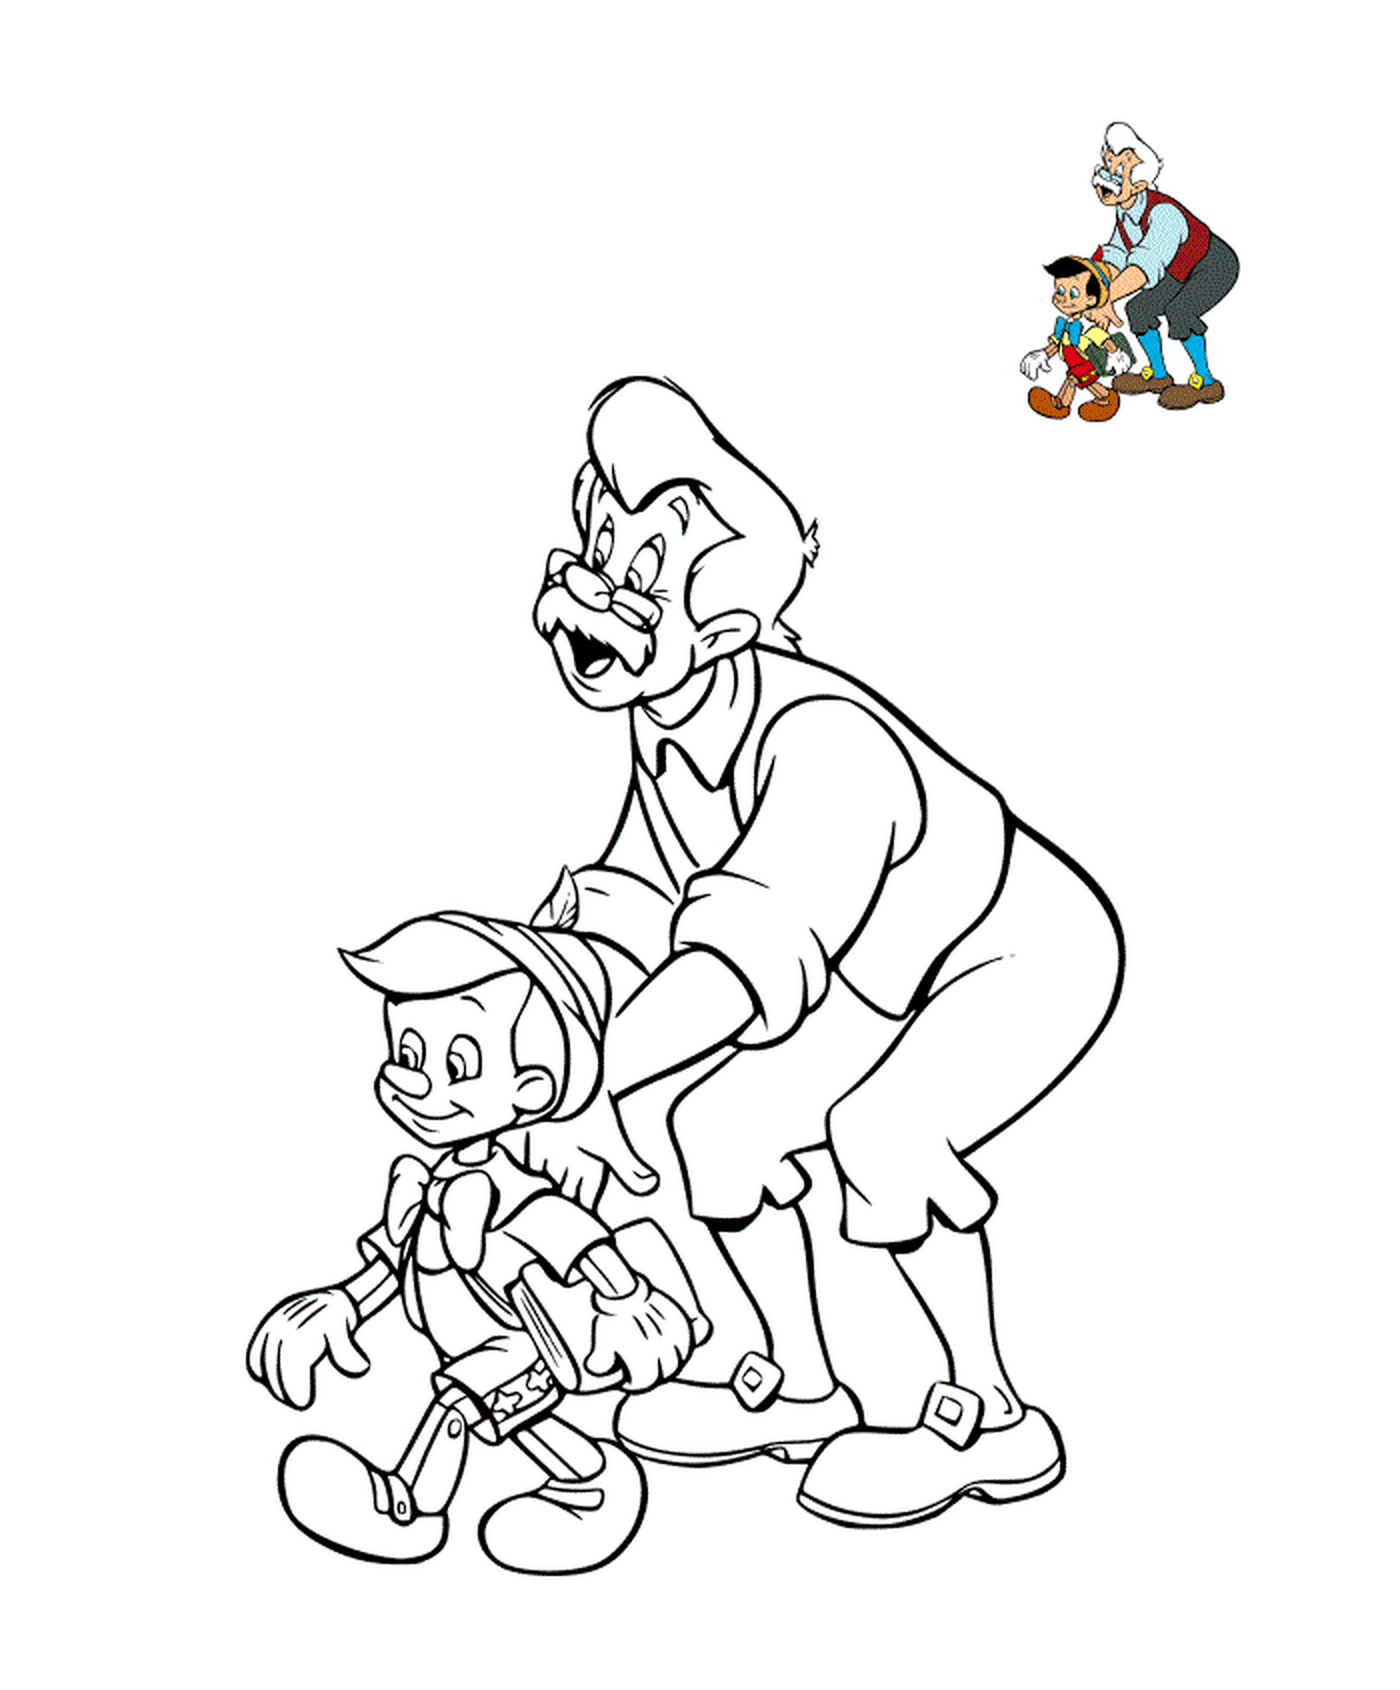   Geppetto avec son enfant, Pinocchio 